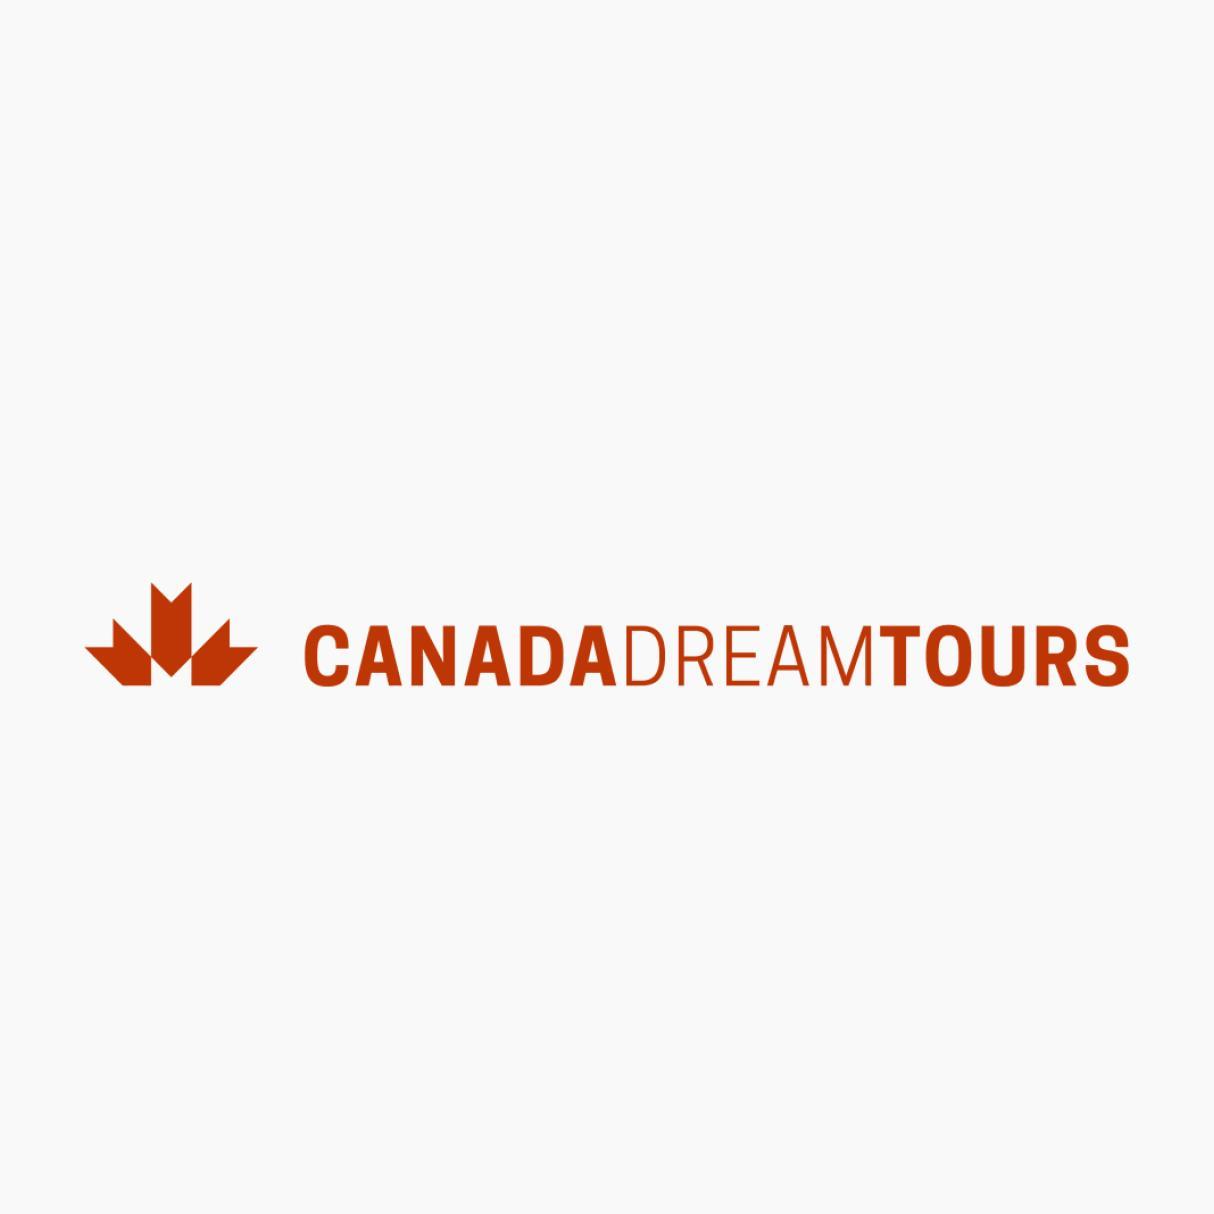 Canada Dream Tours logo